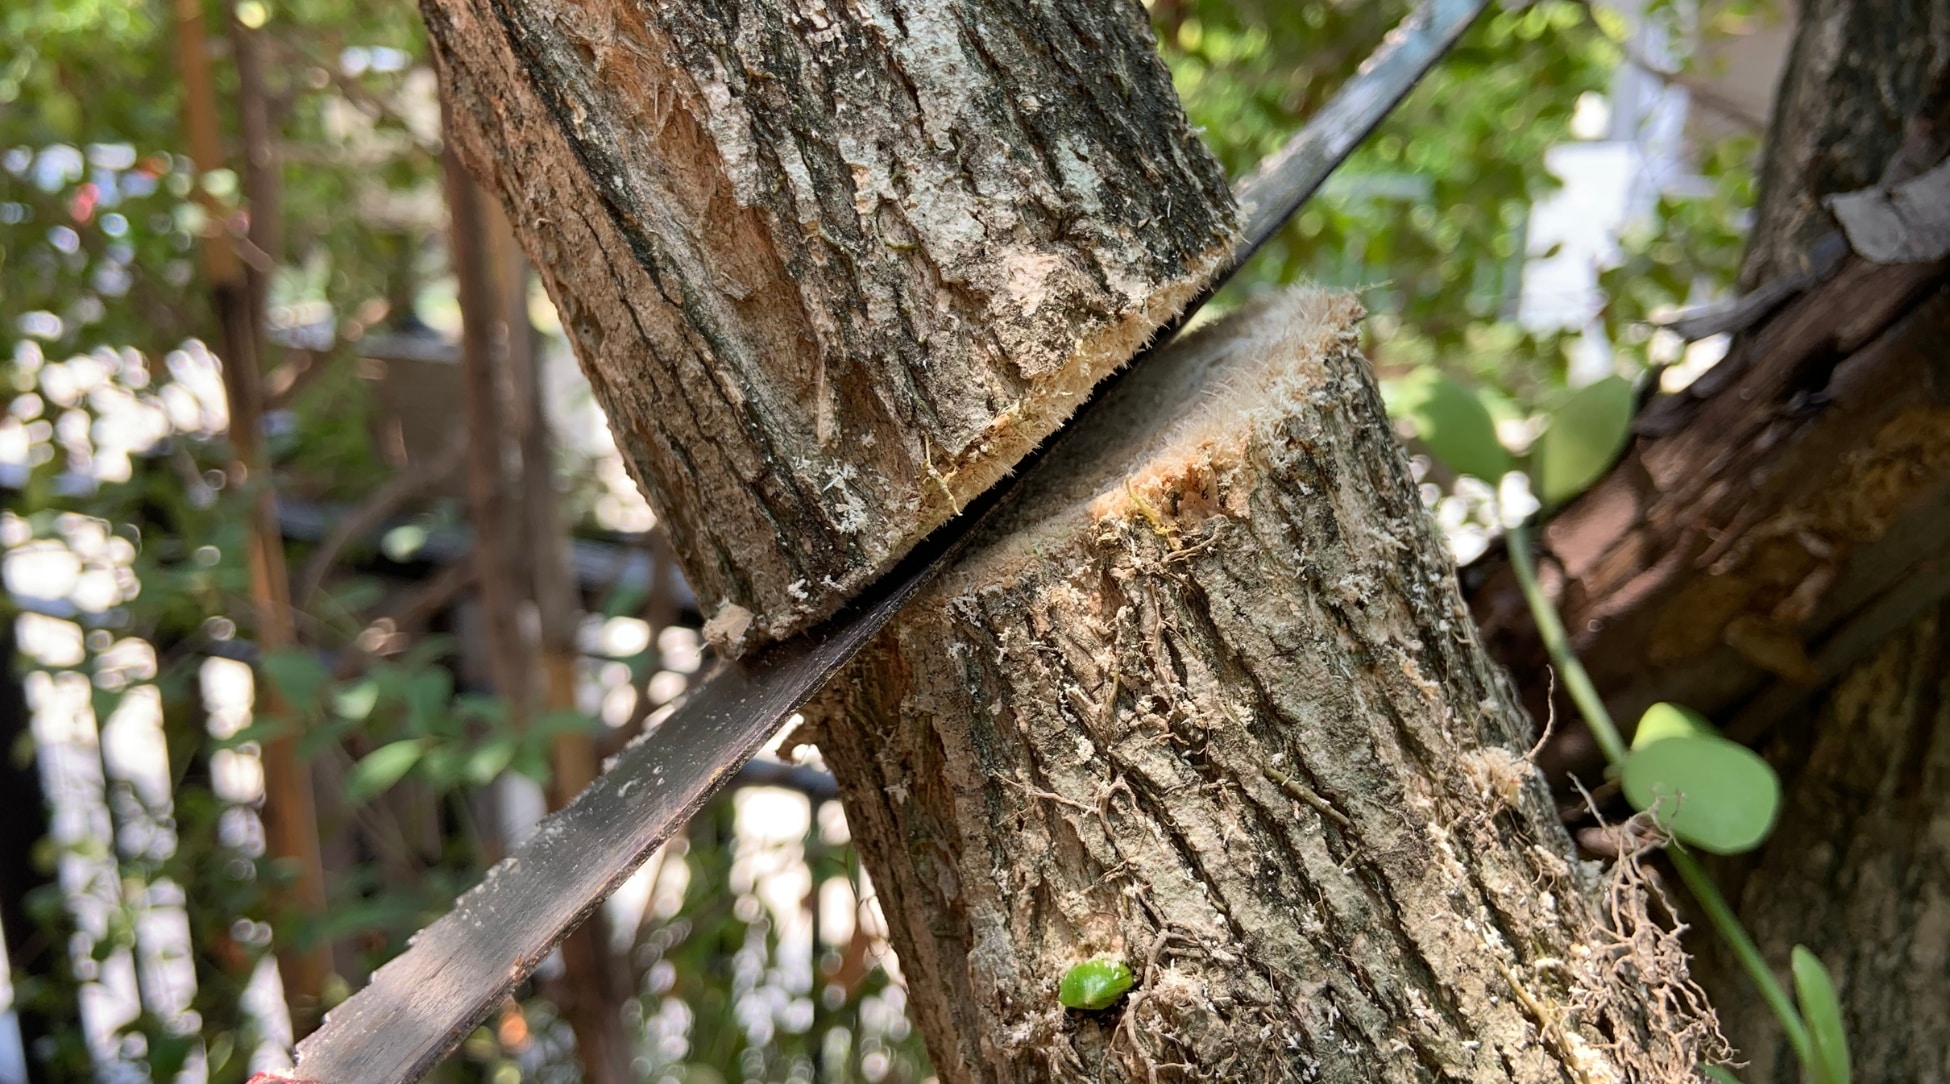 Usando una sierra para cortar un árbol viejo, el tronco marrón queda expuesto, mostrando su núcleo fuerte y robusto.  Hay otros árboles en el fondo.